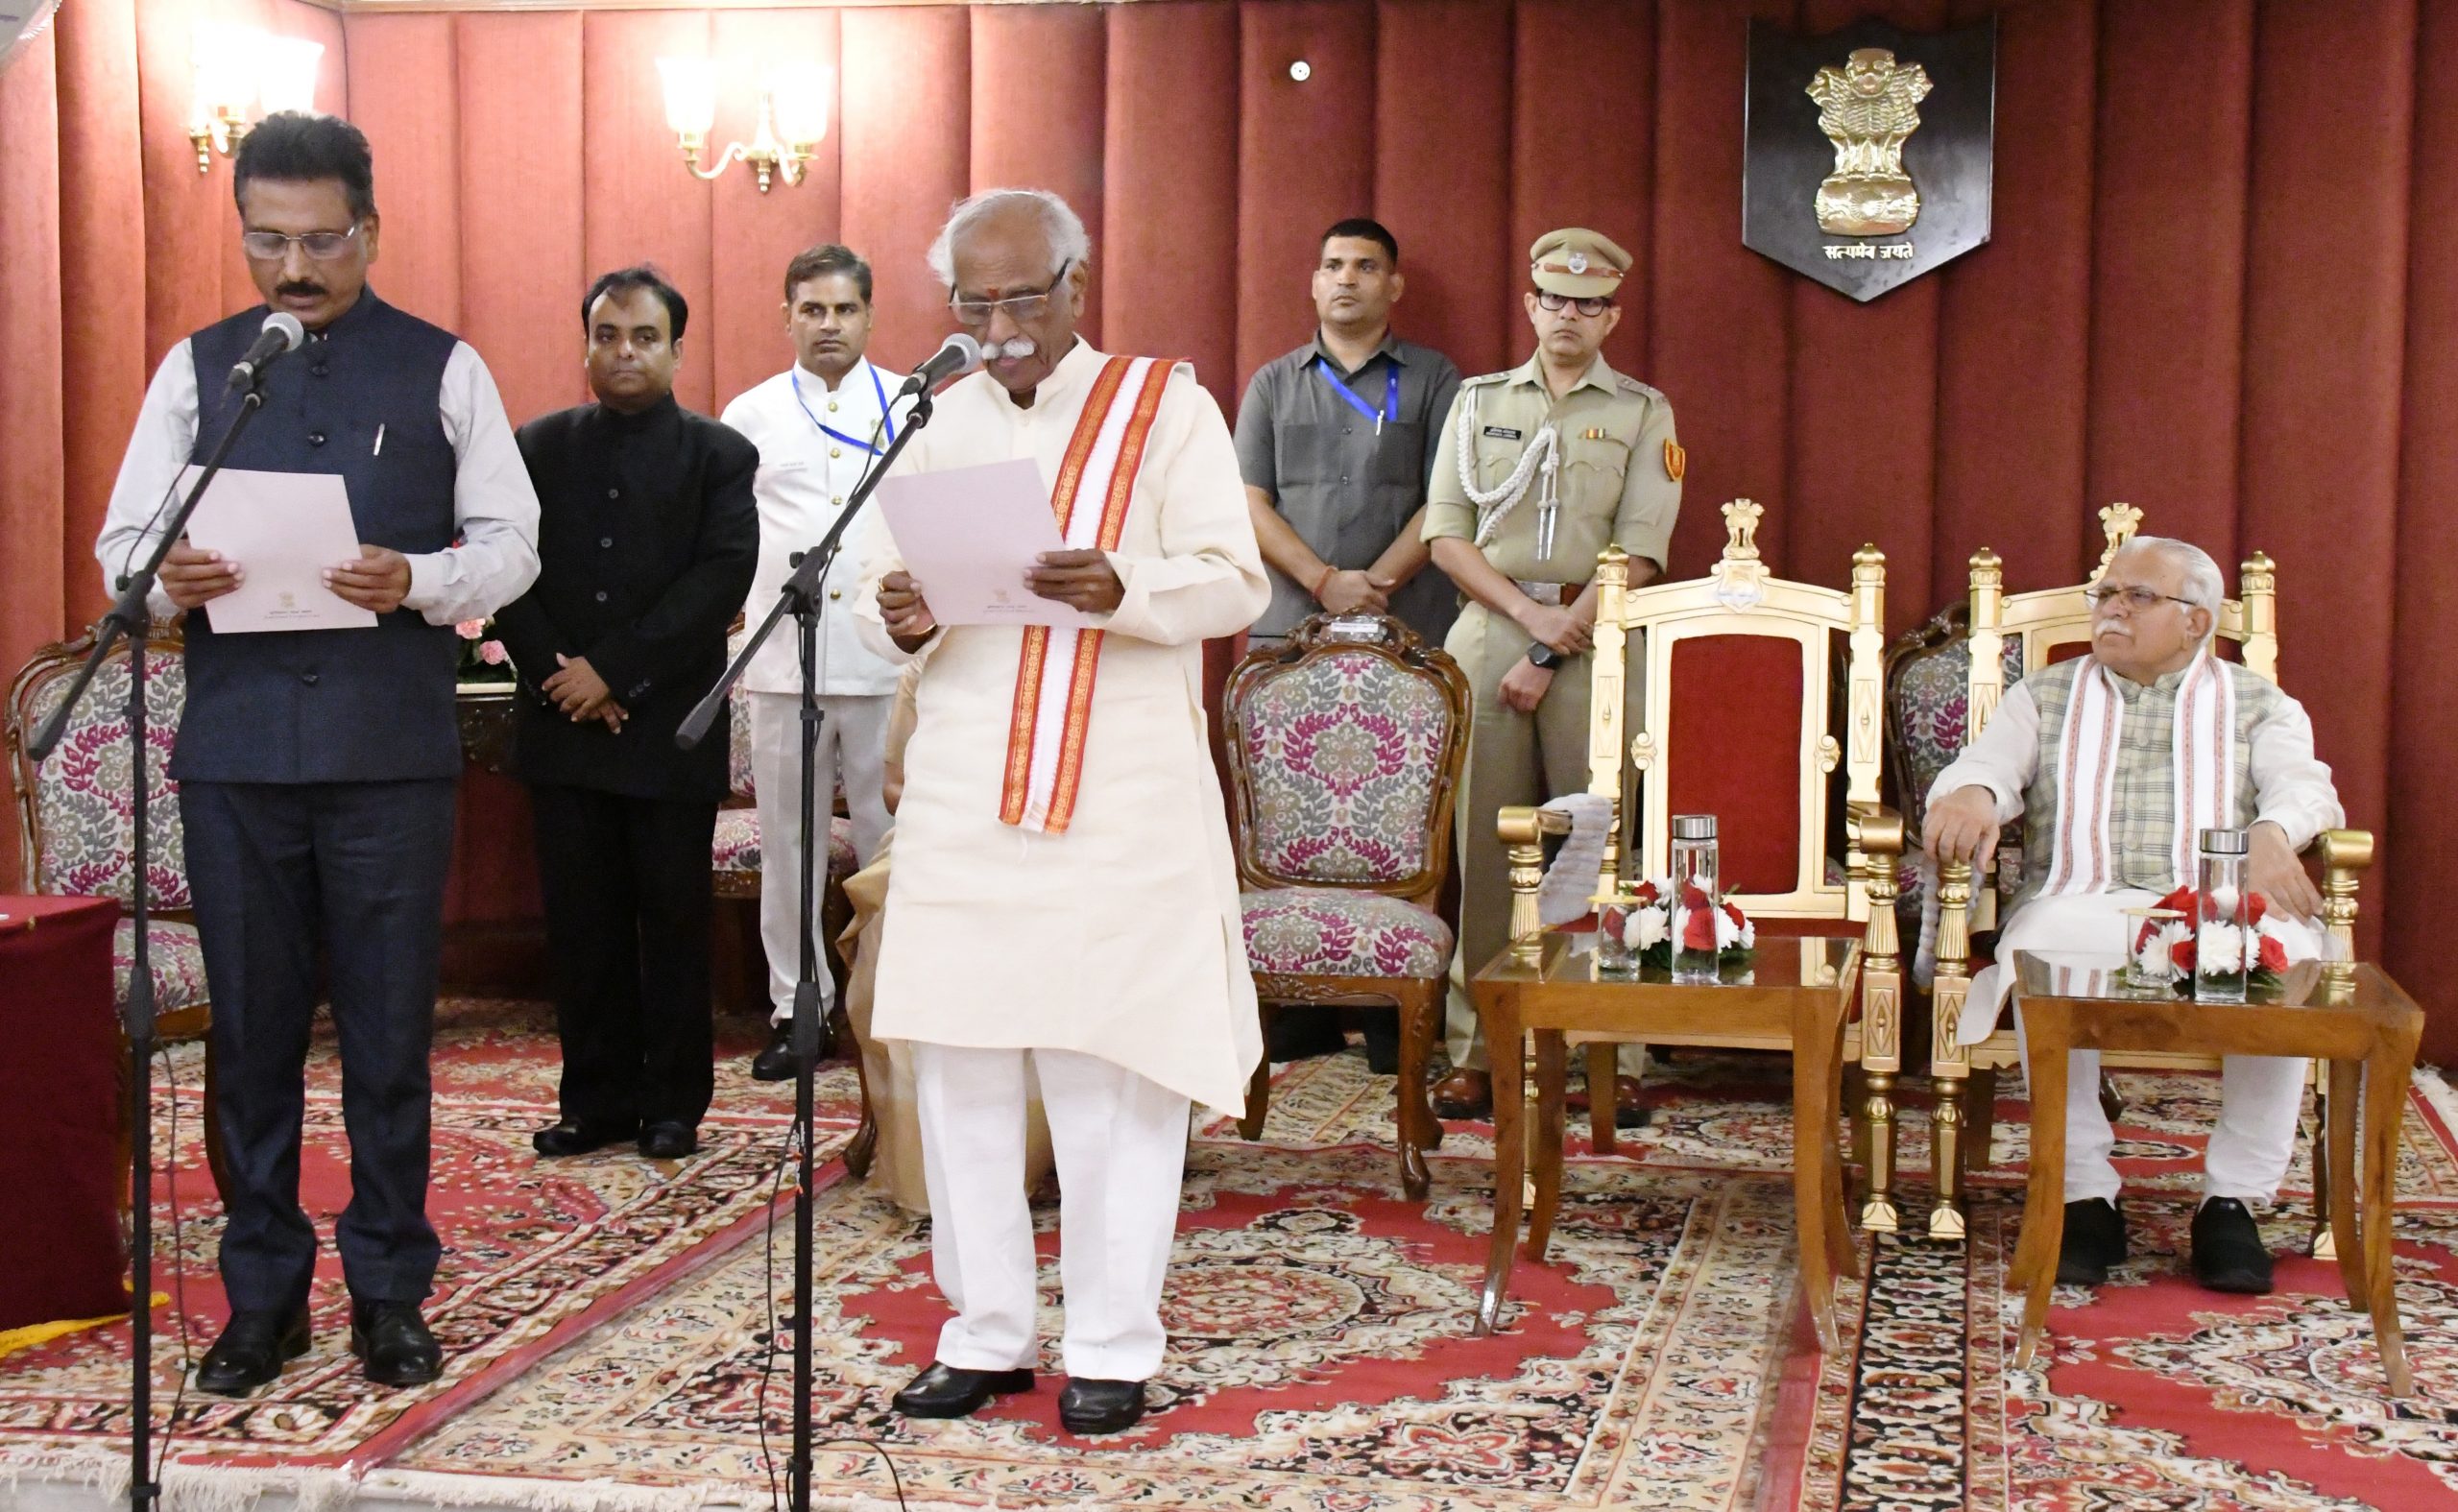 राज्यपाल श्री बंडारू दत्तात्रेय राजभवन चंडीगढ़ में हरियाणा लोक सेवा आयोग के नए सदस्य श्री राजेन्द्र कुमार को पद की निष्ठा एवं गोपनीयता की शपथ दिलाते हुए